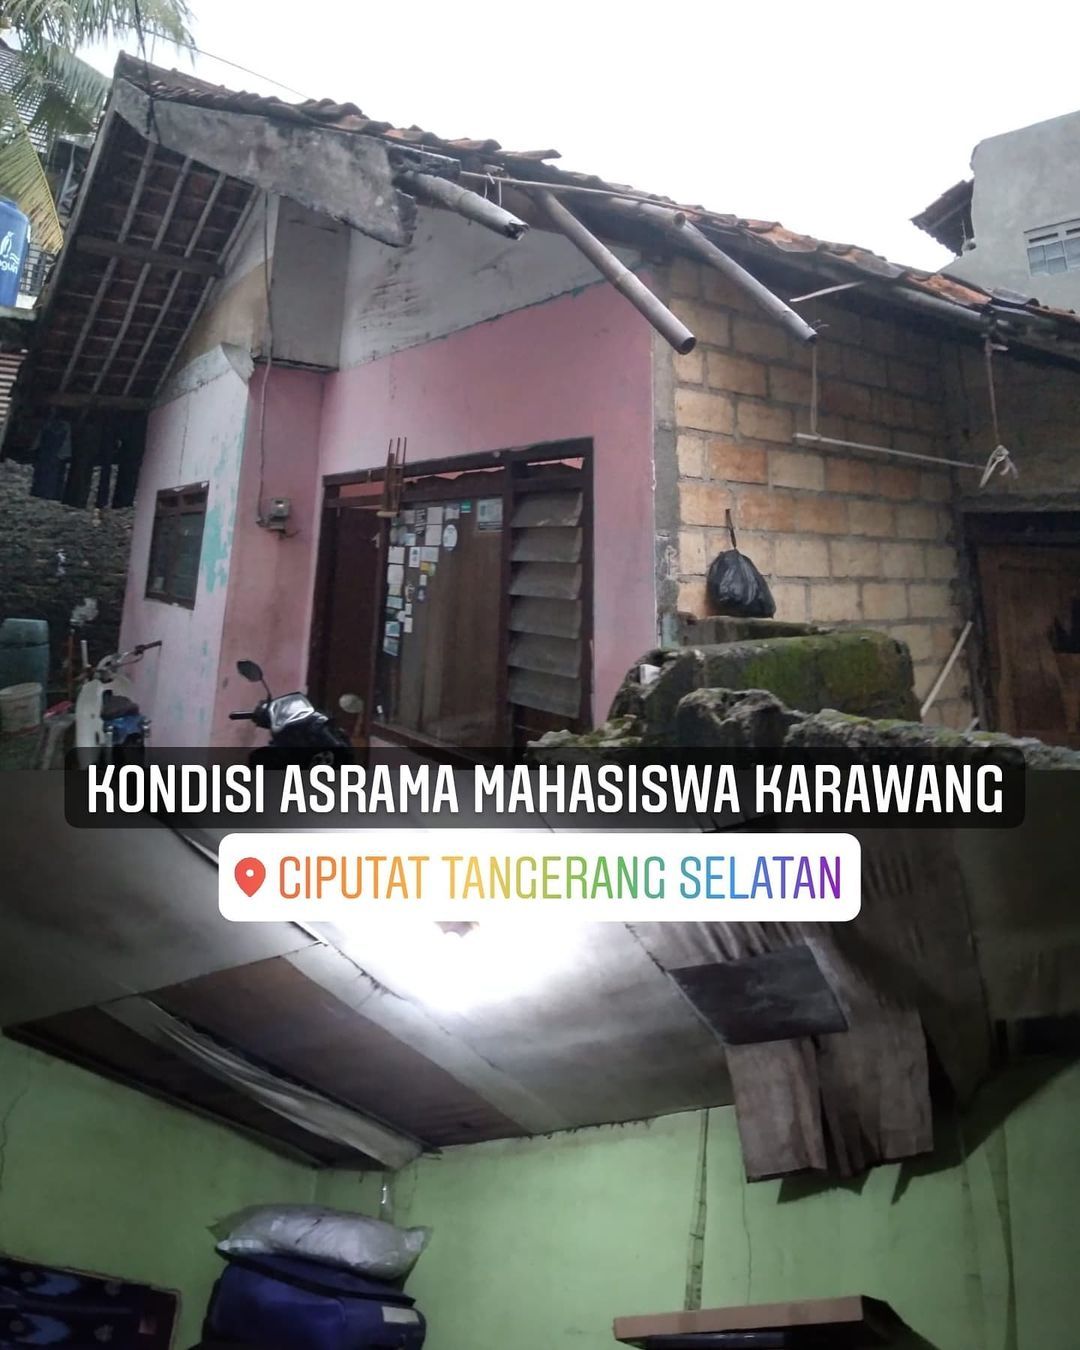 Kondisi asrama mahasiswa asal Karawang yang merupakan aset Pemkab Karawang